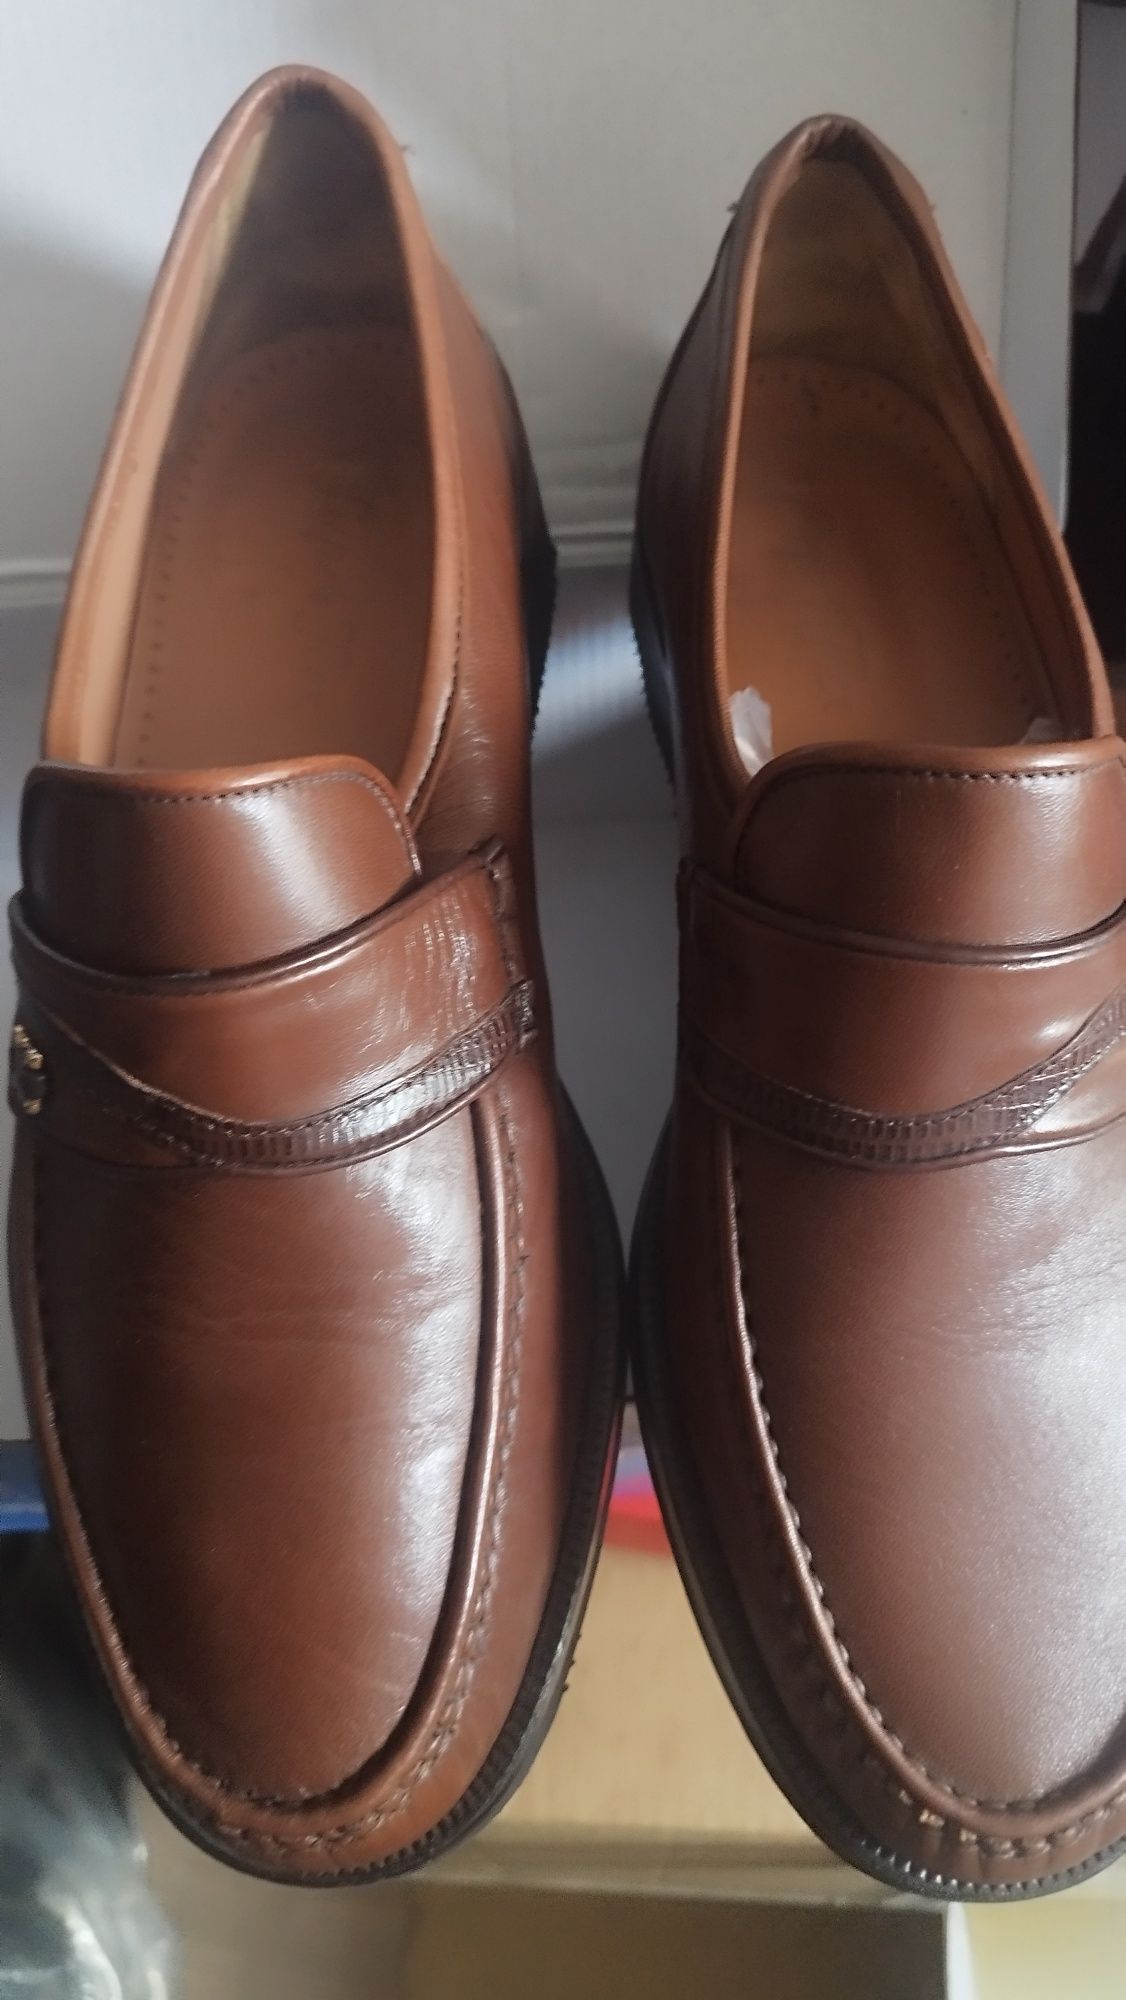 Pantofi bărbați măr 42,model elegant pentru costum noi piele naturală